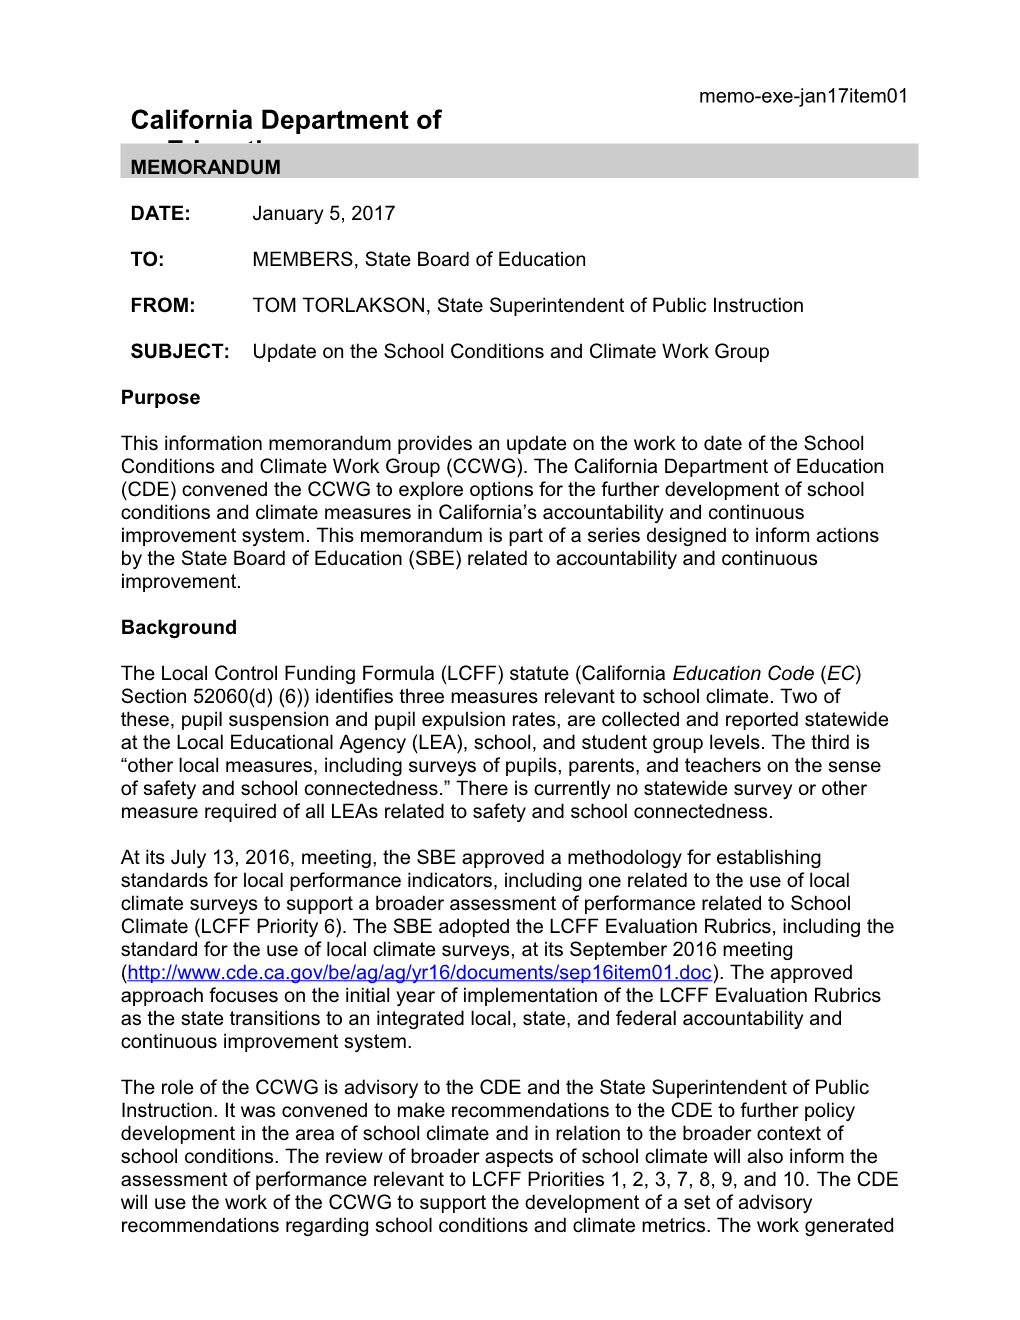 January 2017 Memo EXE Item 01 - Information Memorandum (CA State Board of Education)